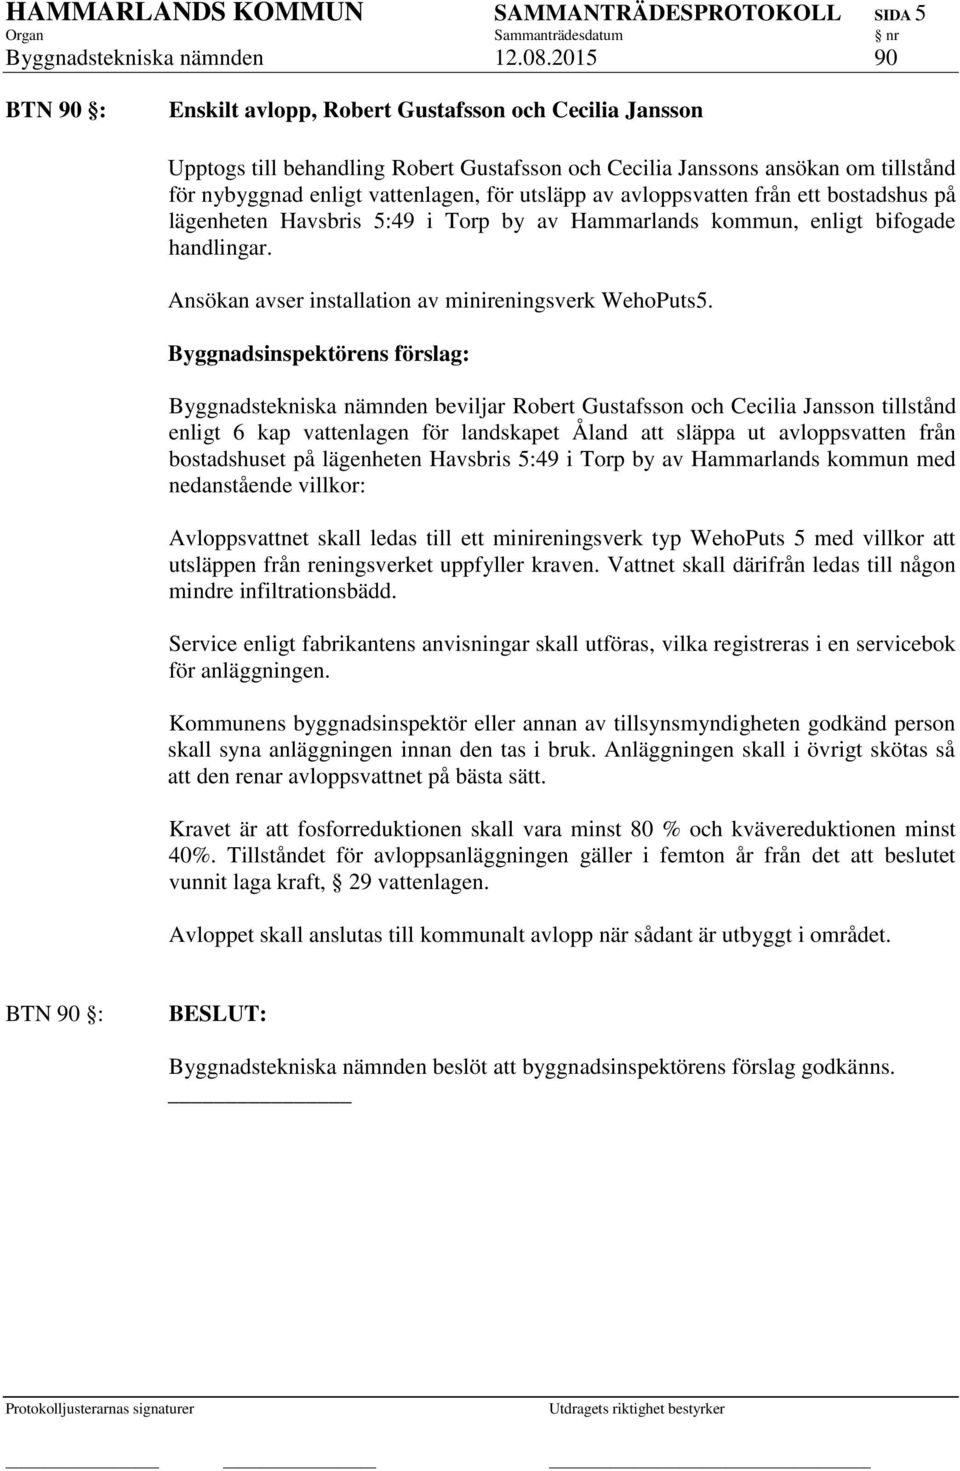 utsläpp av avloppsvatten från ett bostadshus på lägenheten Havsbris 5:49 i Torp by av Hammarlands kommun, enligt bifogade handlingar. Ansökan avser installation av minireningsverk WehoPuts5.